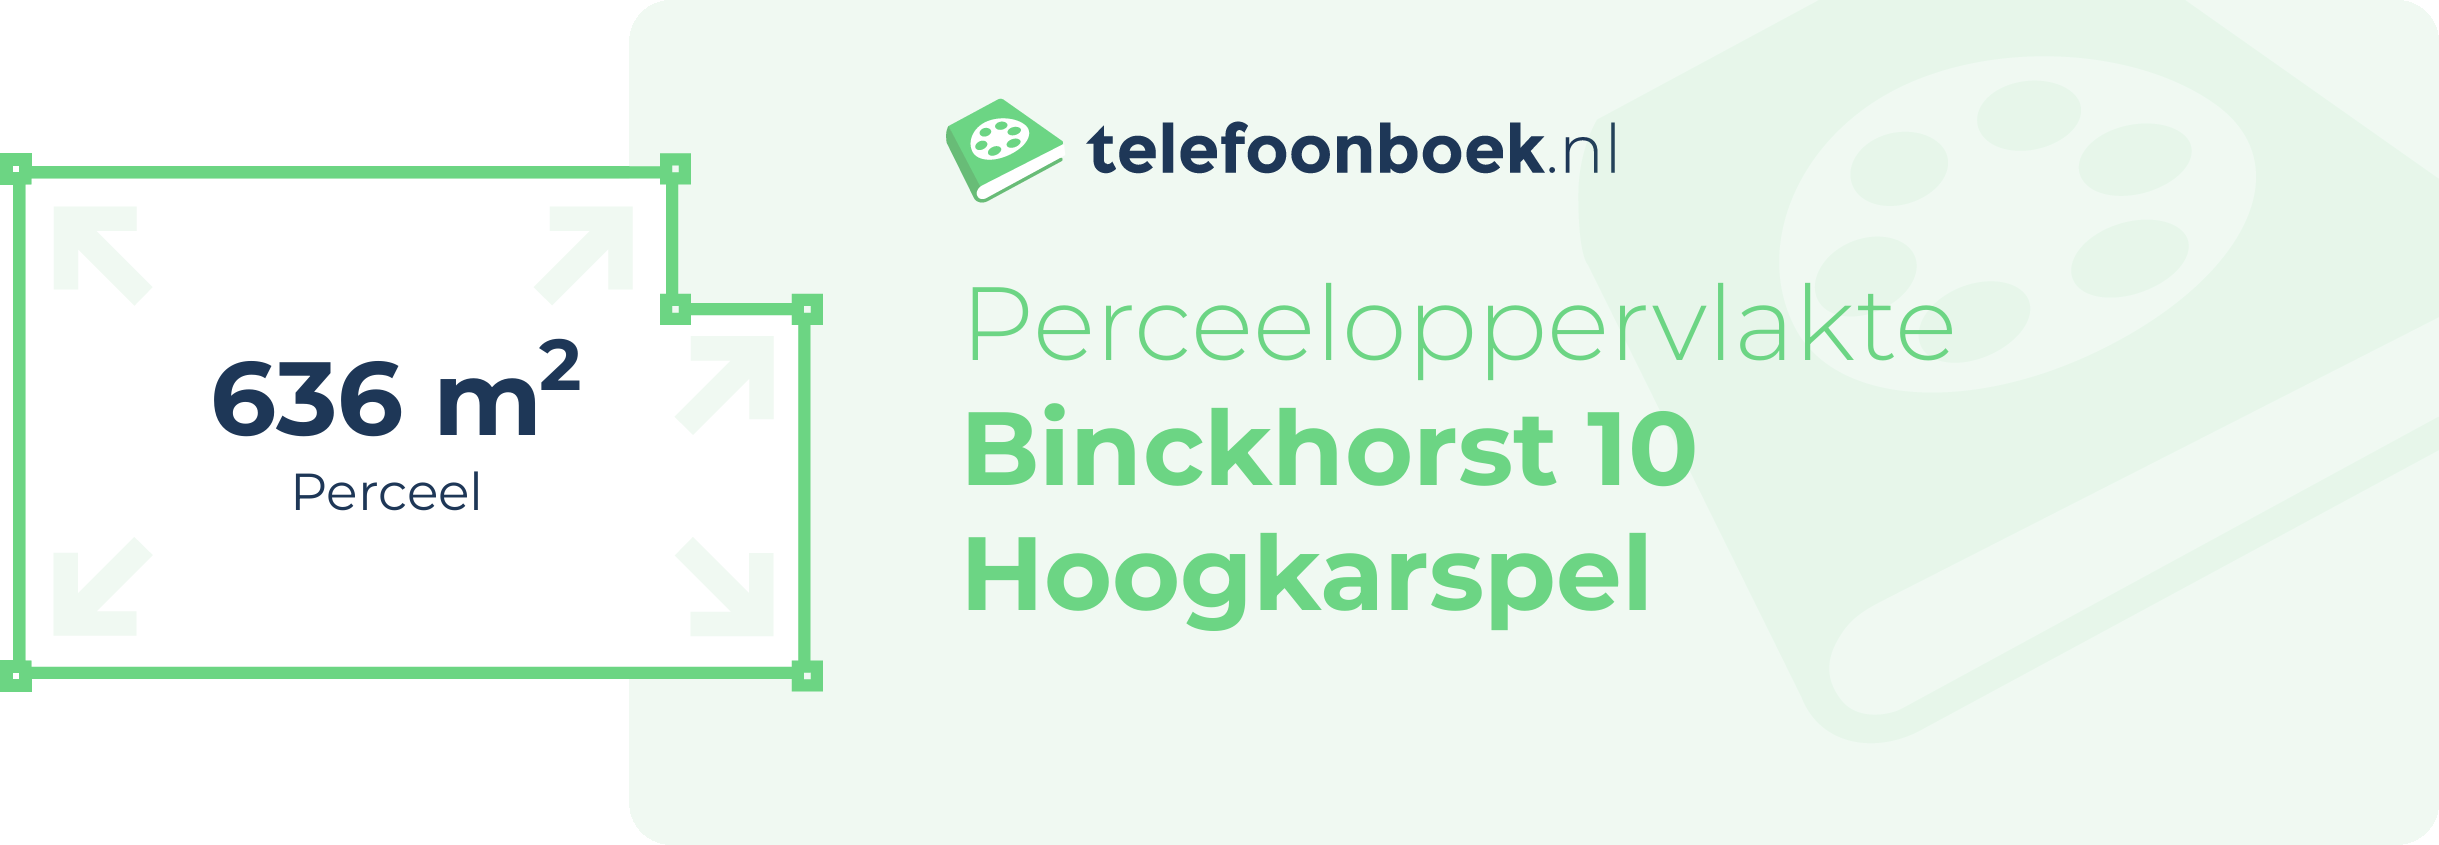 Perceeloppervlakte Binckhorst 10 Hoogkarspel